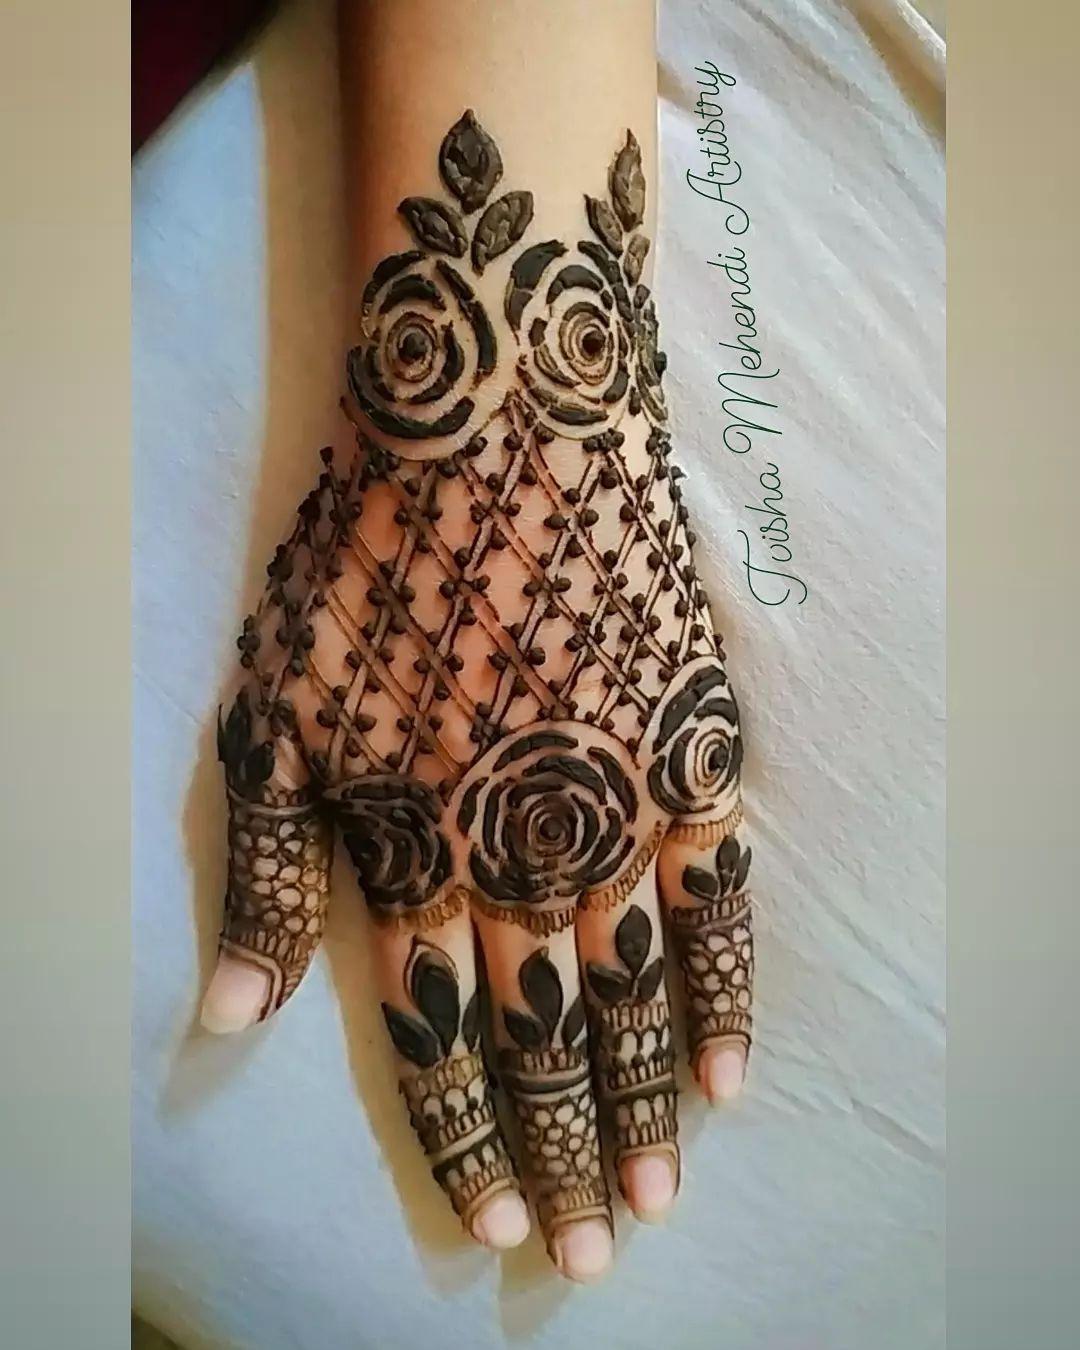 mehendi designs henna